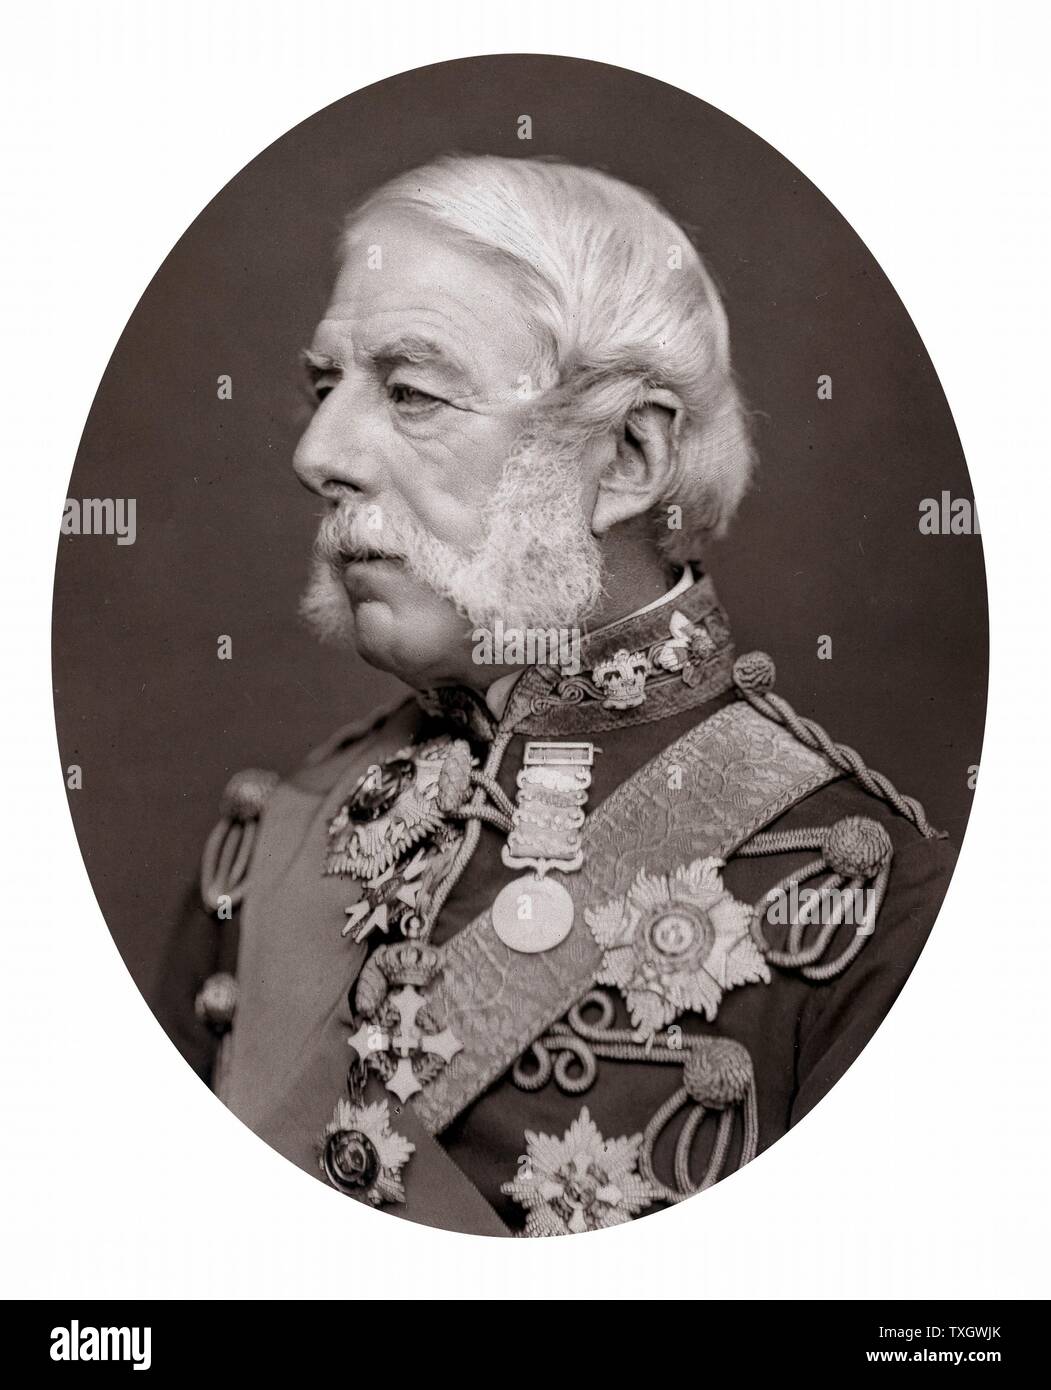 Richard Airey, Baron Airey (1803-81) Englischer Soldat; Quartermaster General Krim Armee 1854-5; Gouverneur von Gibraltar 1865-70 Foto veröffentlicht 1875 Woodburytype Stockfoto